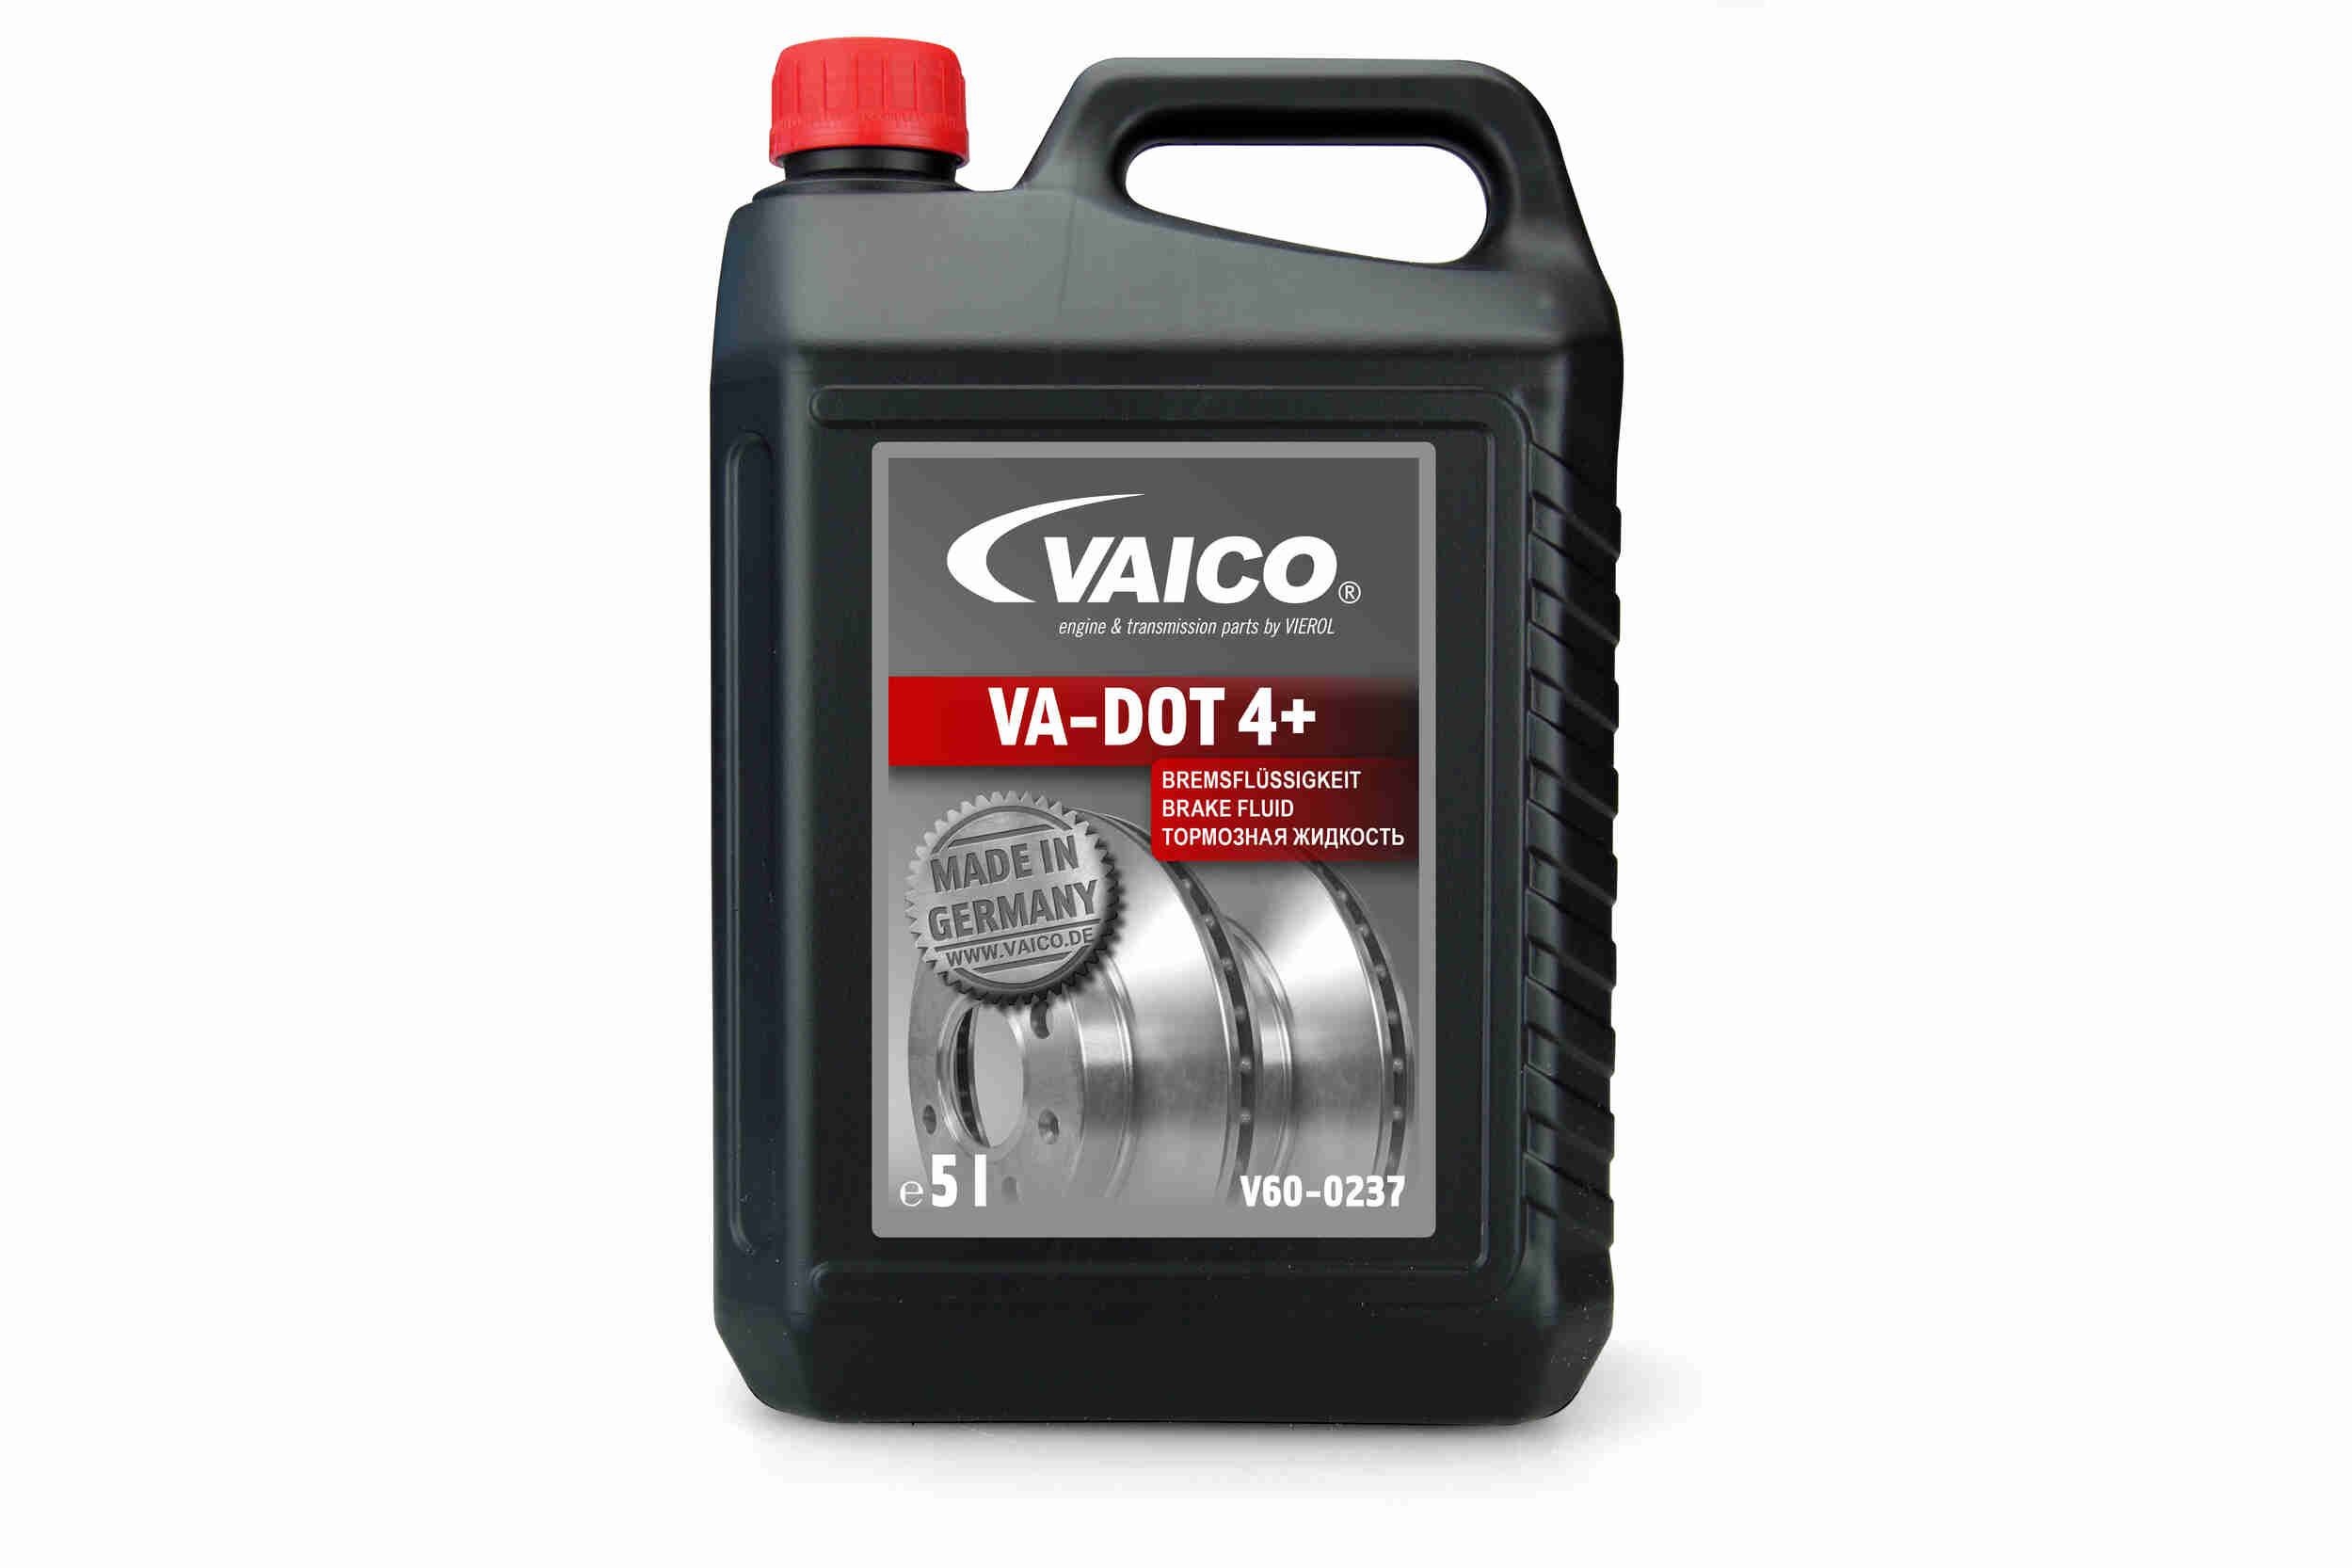 Original V60-0237 VAICO Brake fluid experience and price